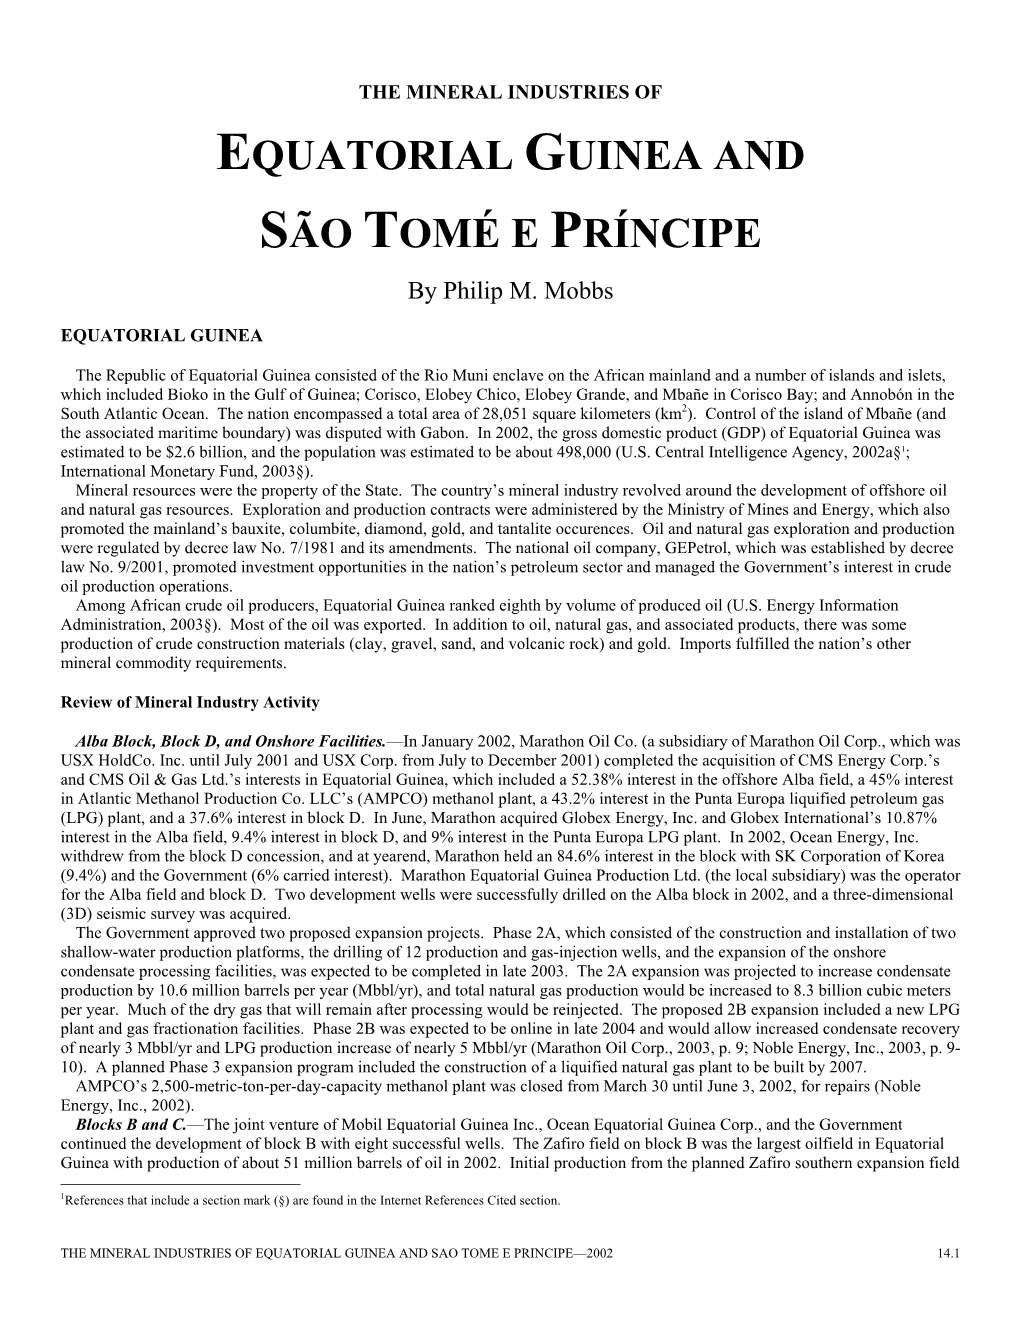 EQUATORIAL GUINEA and SÃO TOMÉ E PRÍNCIPE by Philip M